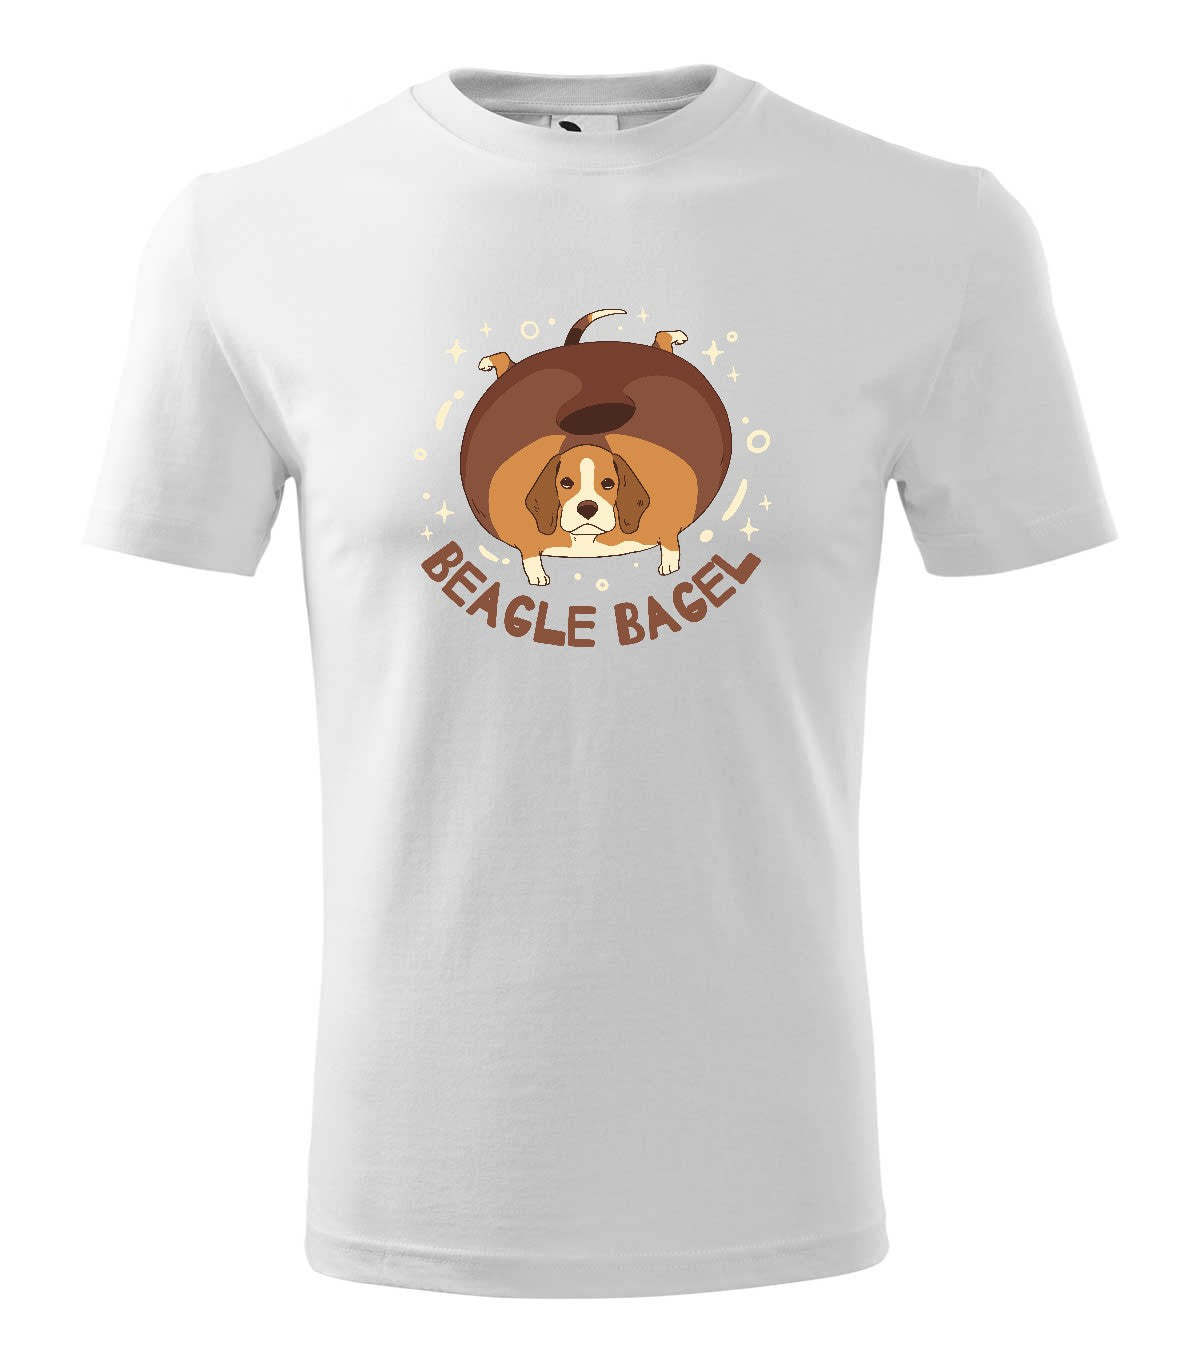 Beagle Bagel gyerek technikai póló